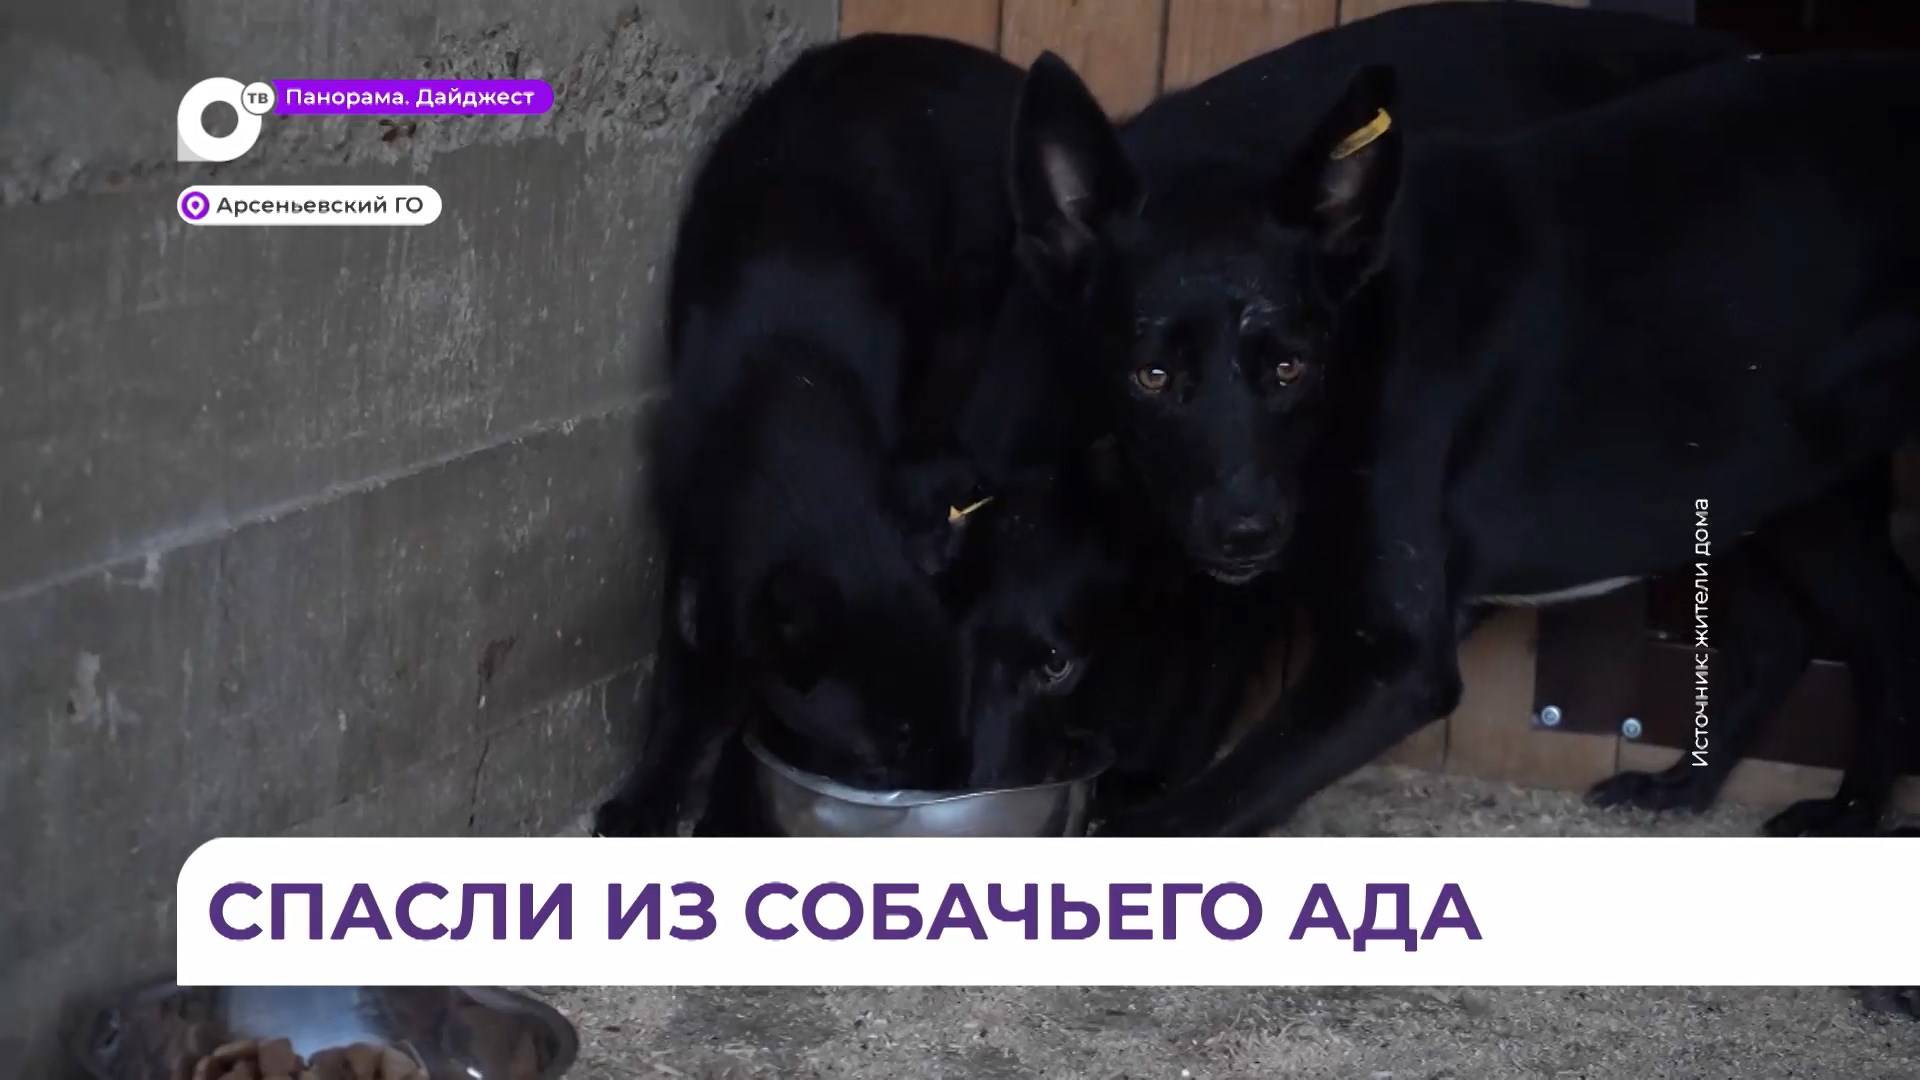 Операция по спасению 20 собак из ада в поселке Кневичи завершилась благополучно